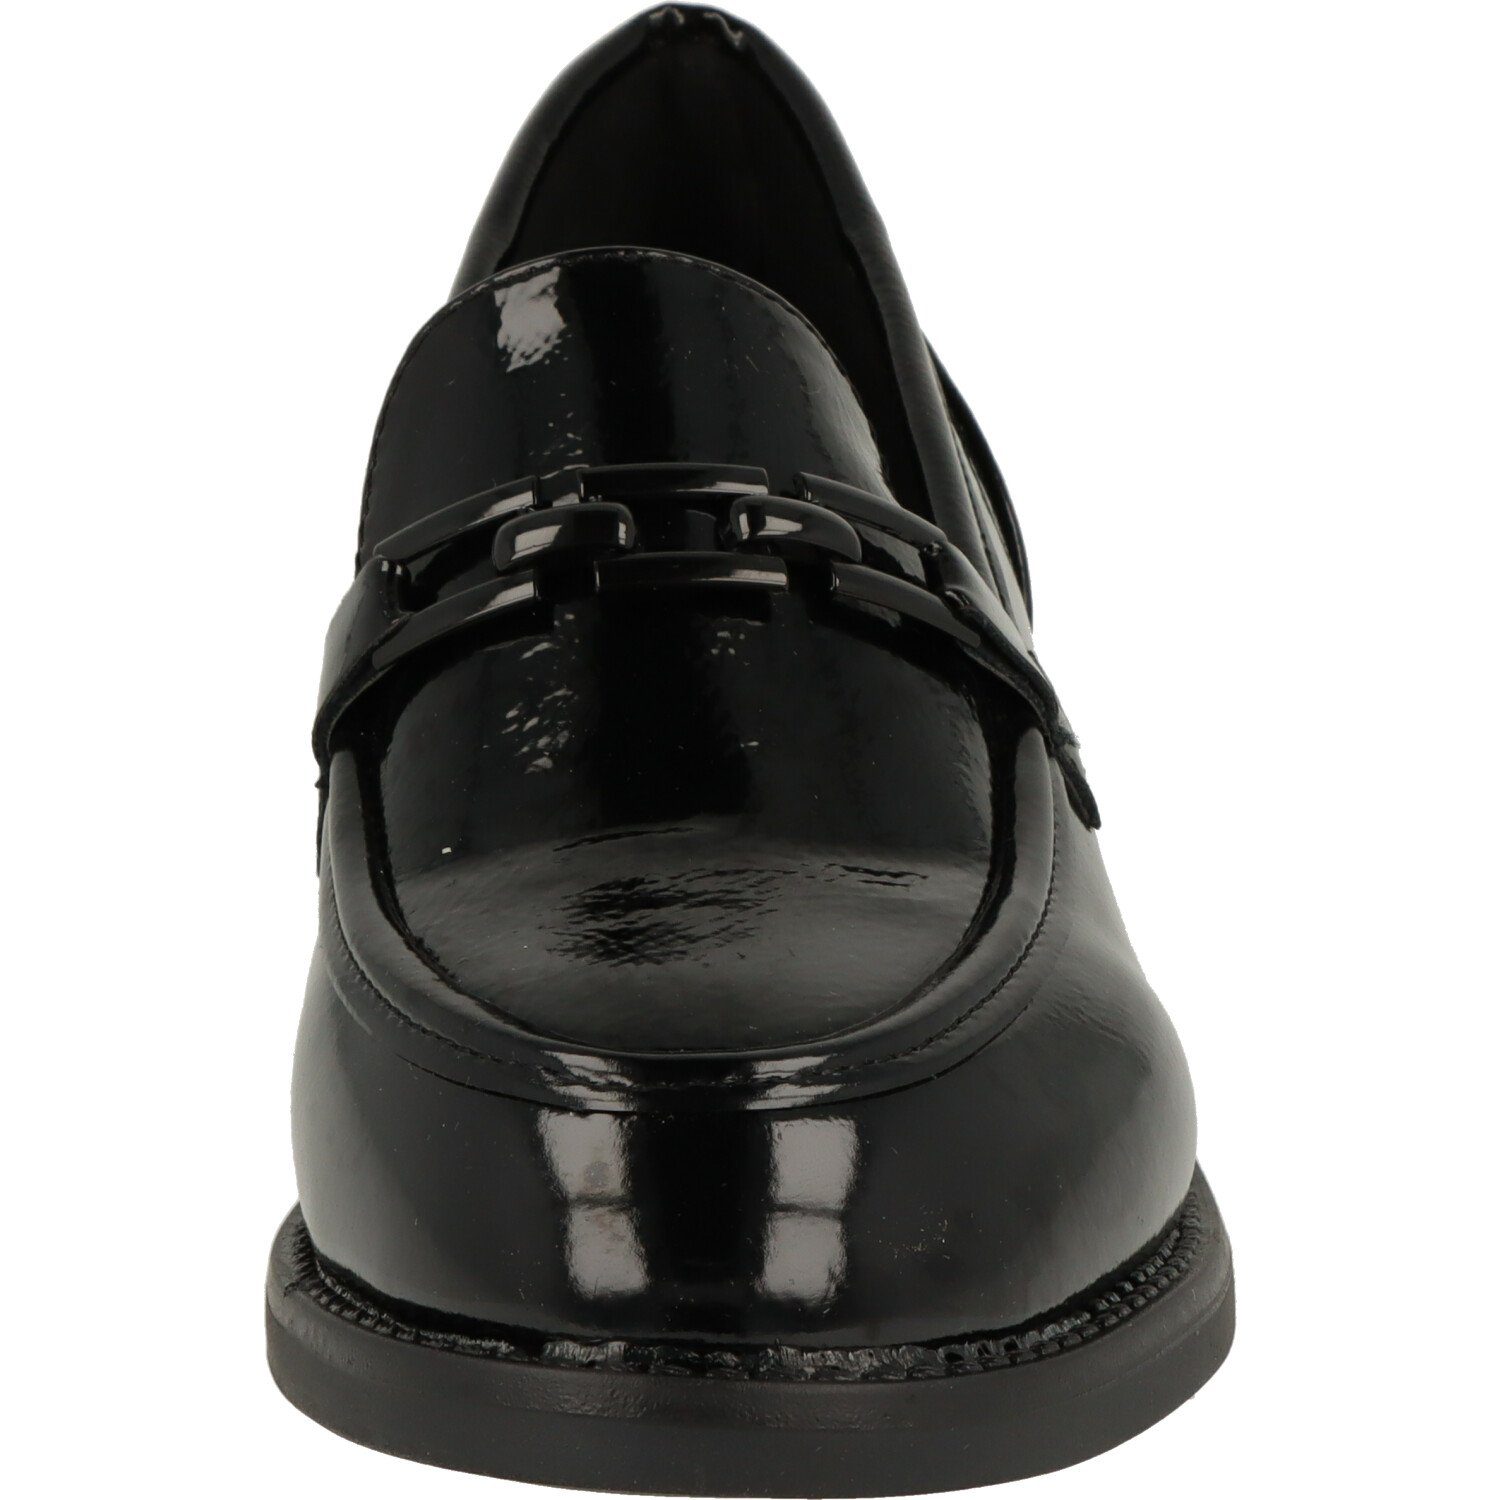 Schuhe Slipper of Lack Schwarz Halbschuhe Damen piece Loafer 242-778 mind.